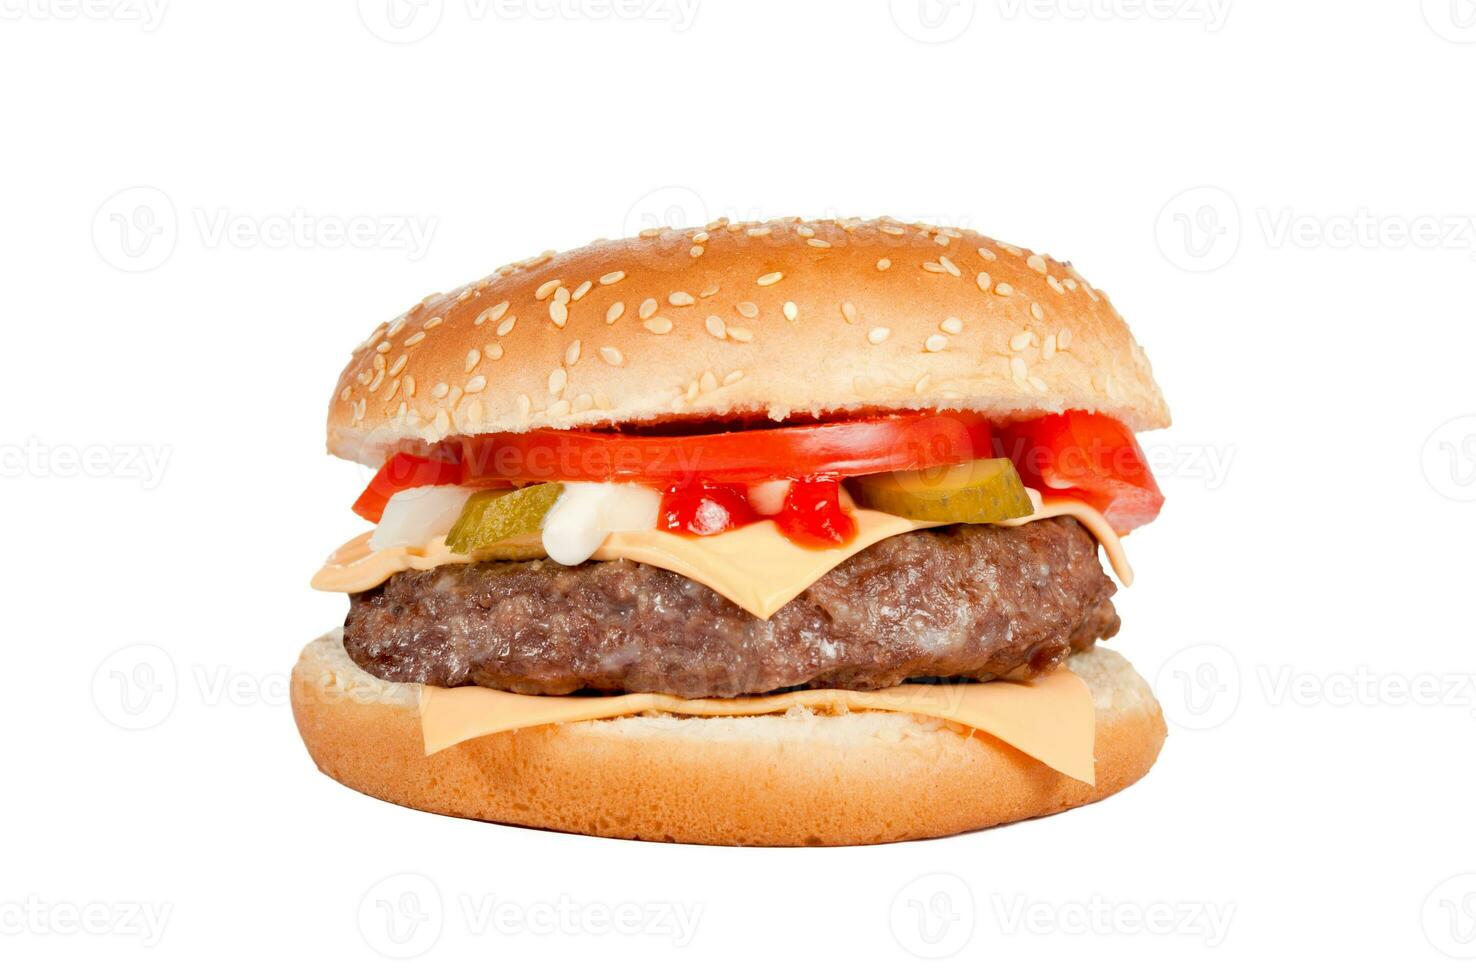 hamburguesa con queso aislado en blanco foto